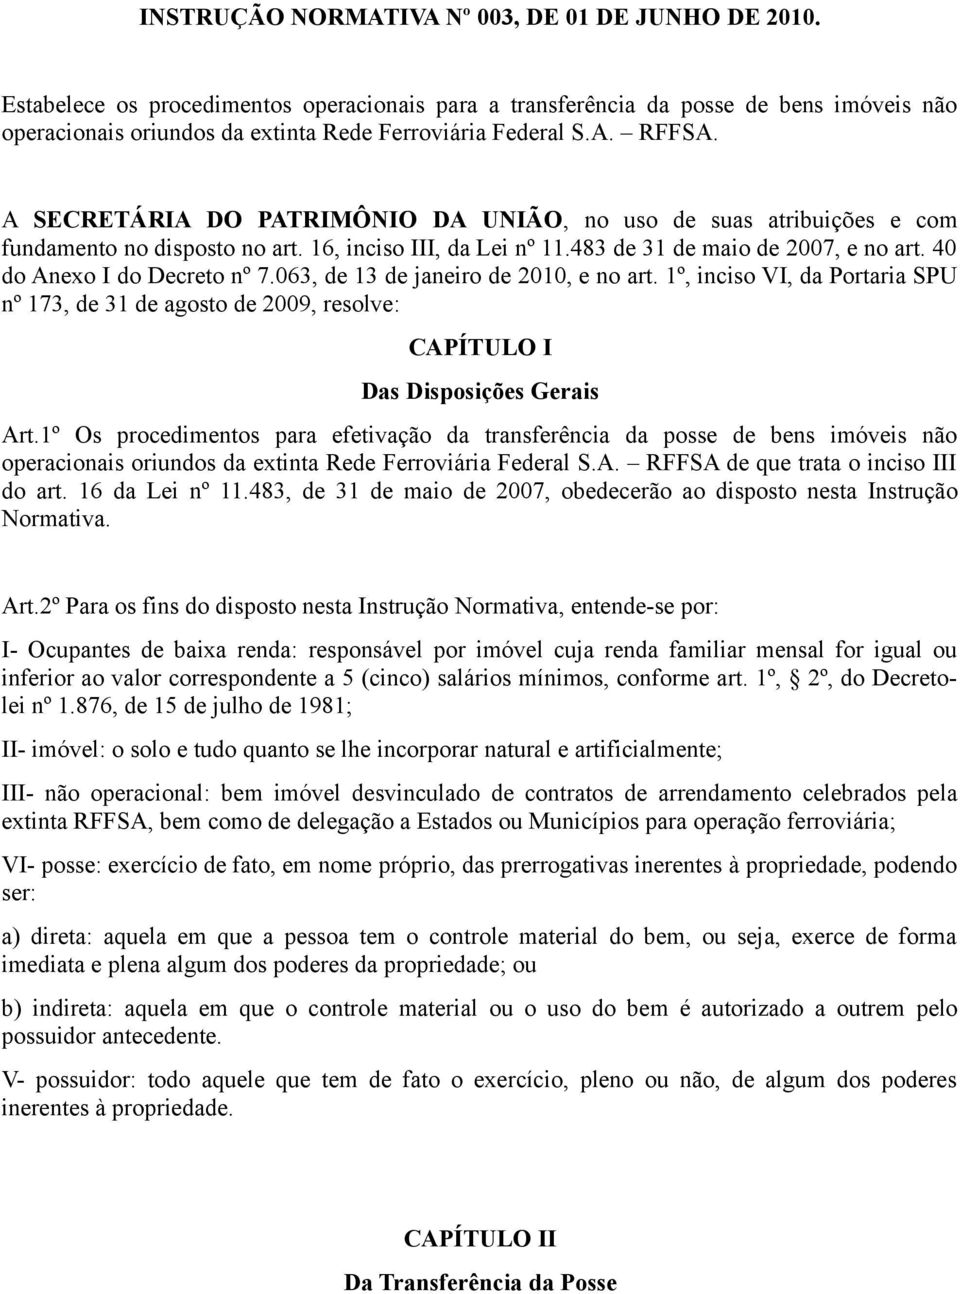 A SECRETÁRIA DO PATRIMÔNIO DA UNIÃO, no uso de suas atribuições e com fundamento no disposto no art. 16, inciso III, da Lei nº 11.483 de 31 de maio de 2007, e no art. 40 do Anexo I do Decreto nº 7.